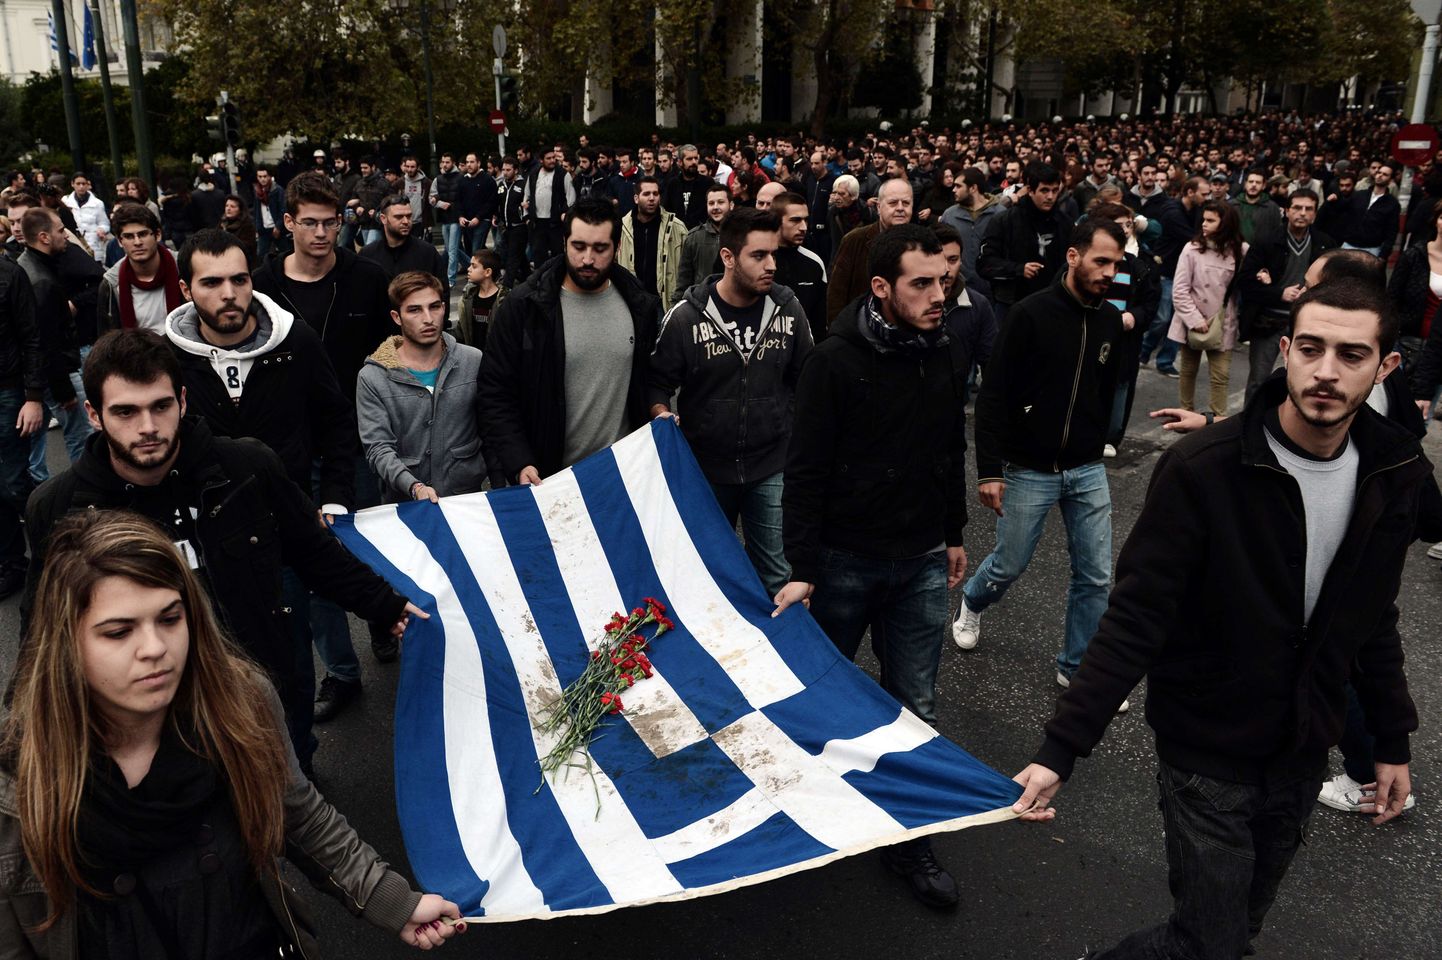 Kreeka noored möödunud aasta novembris Atheena tänavatel meenutamas 39 aasta möödumist sõjaväelise diktatuuri vastu suunatud tudengite ülestõusust.